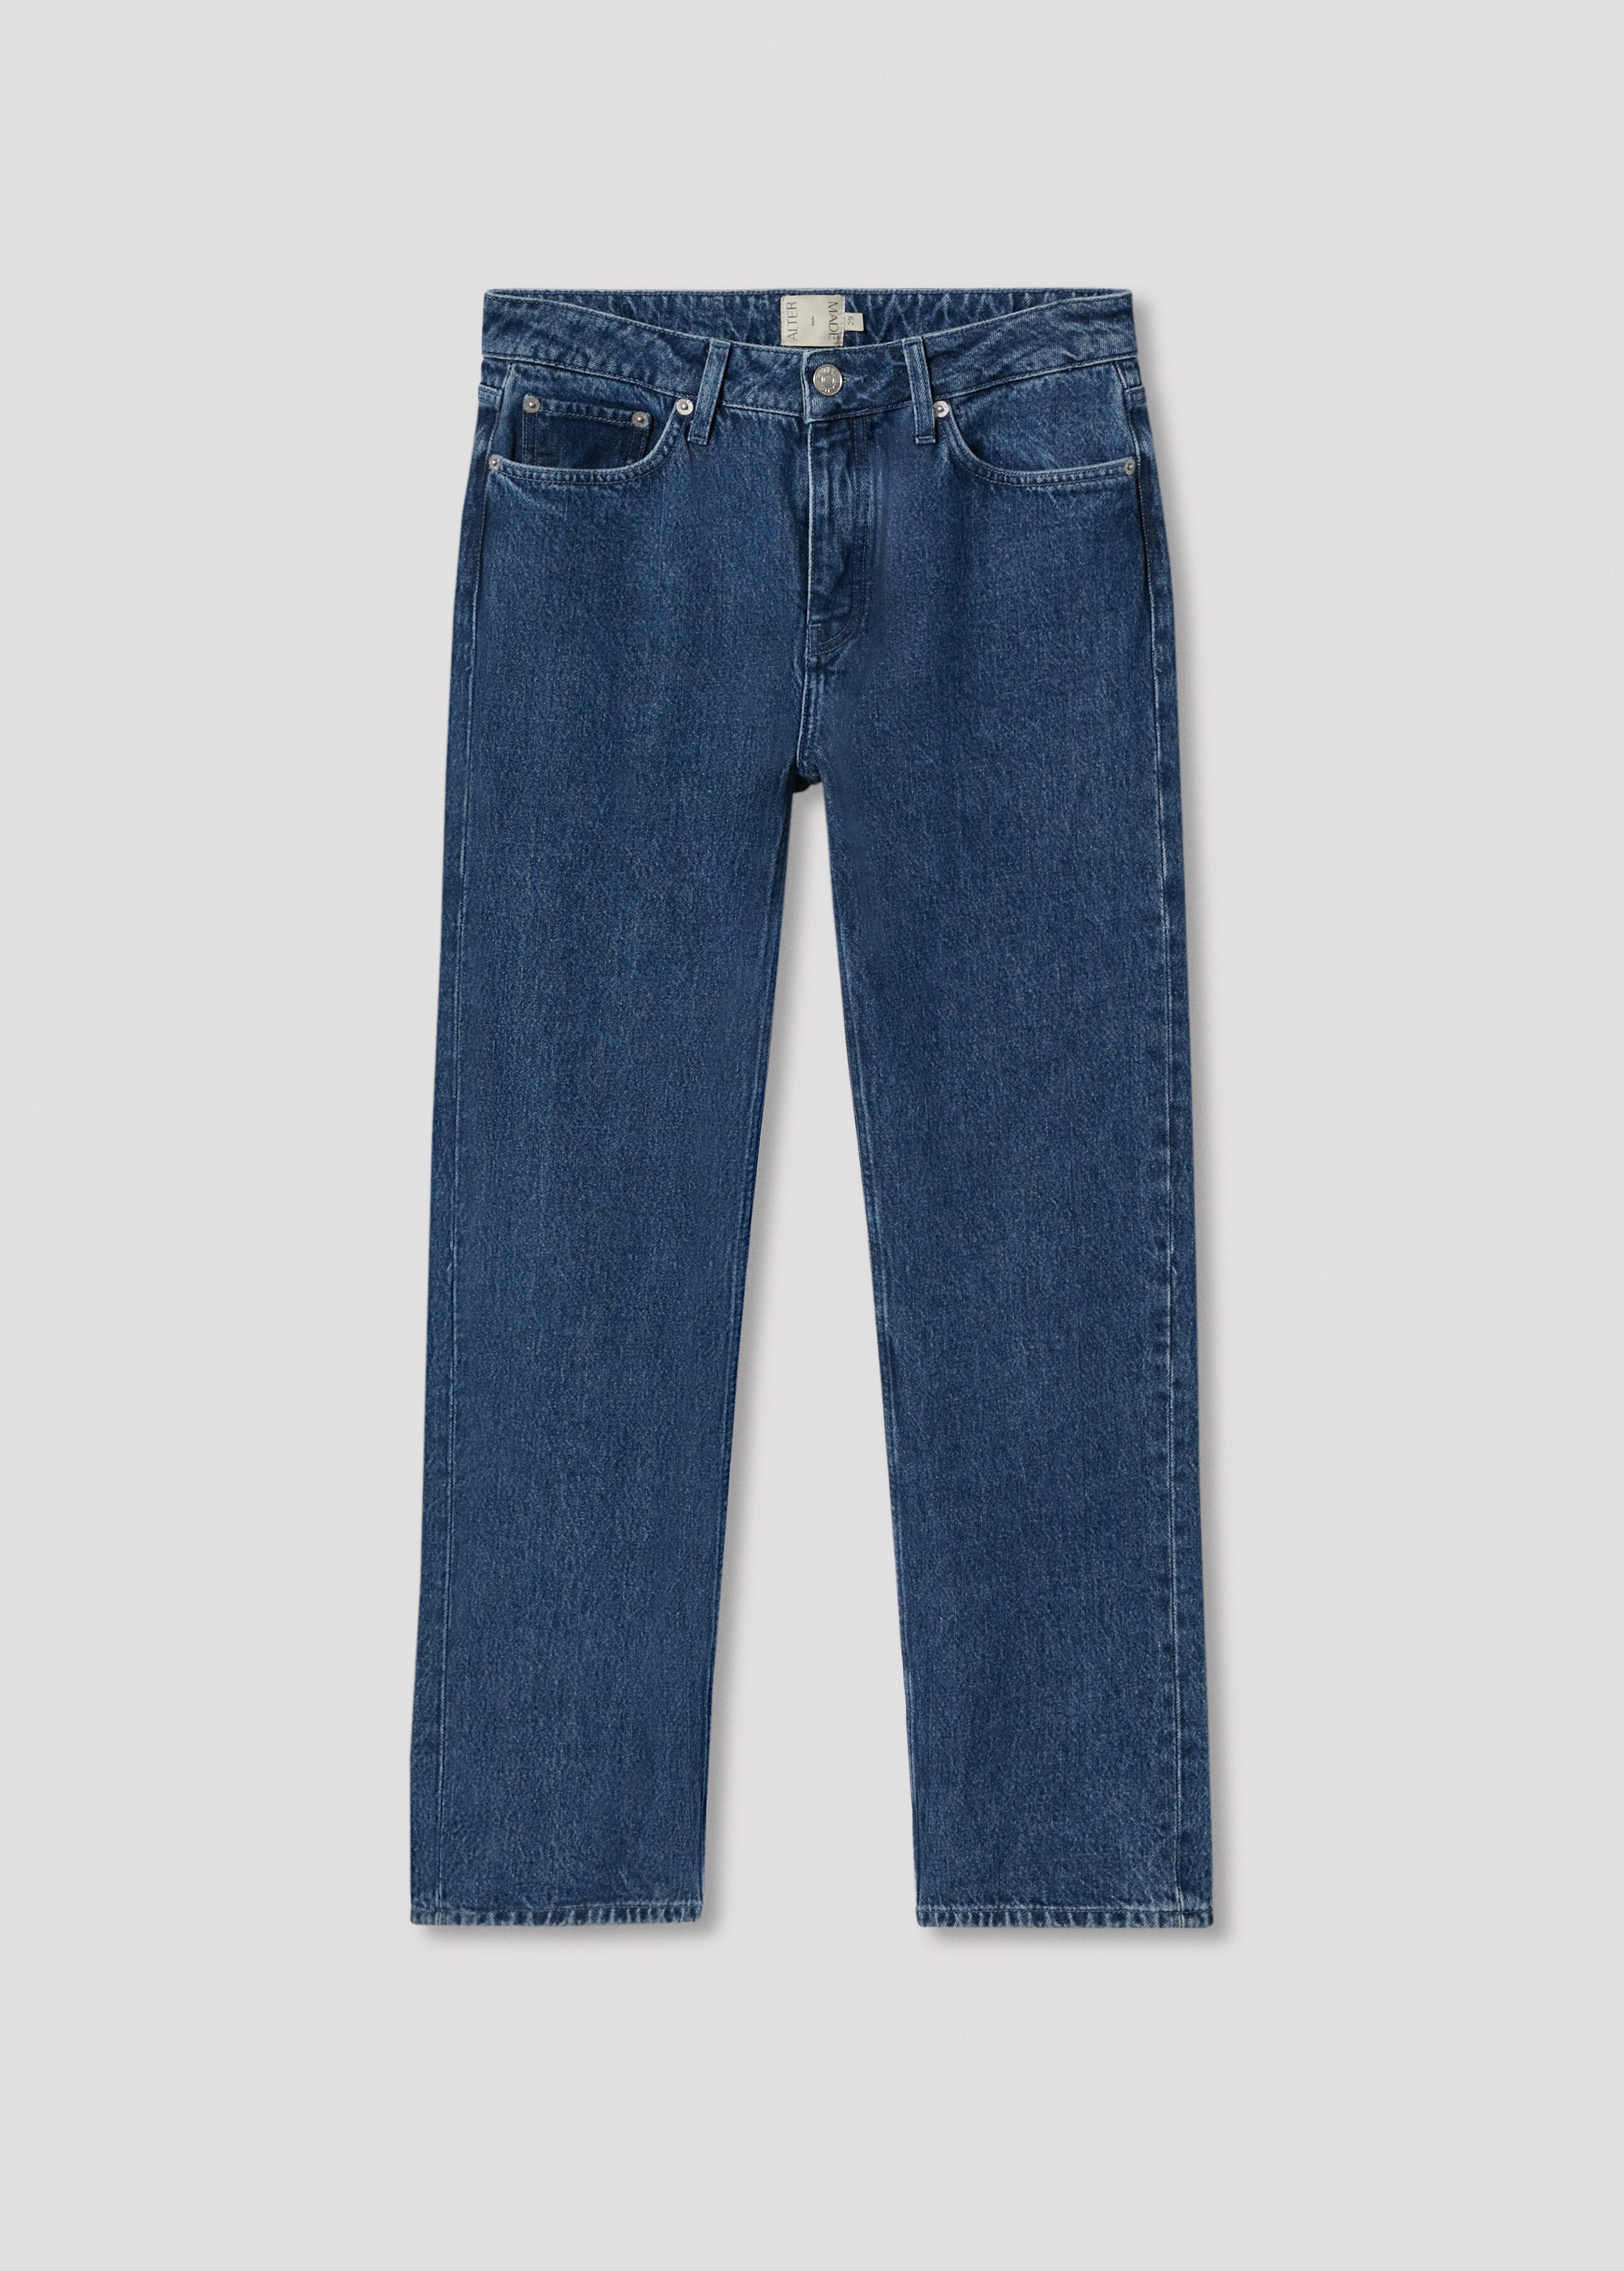 Jeans straight regular length - Artículo sin modelo